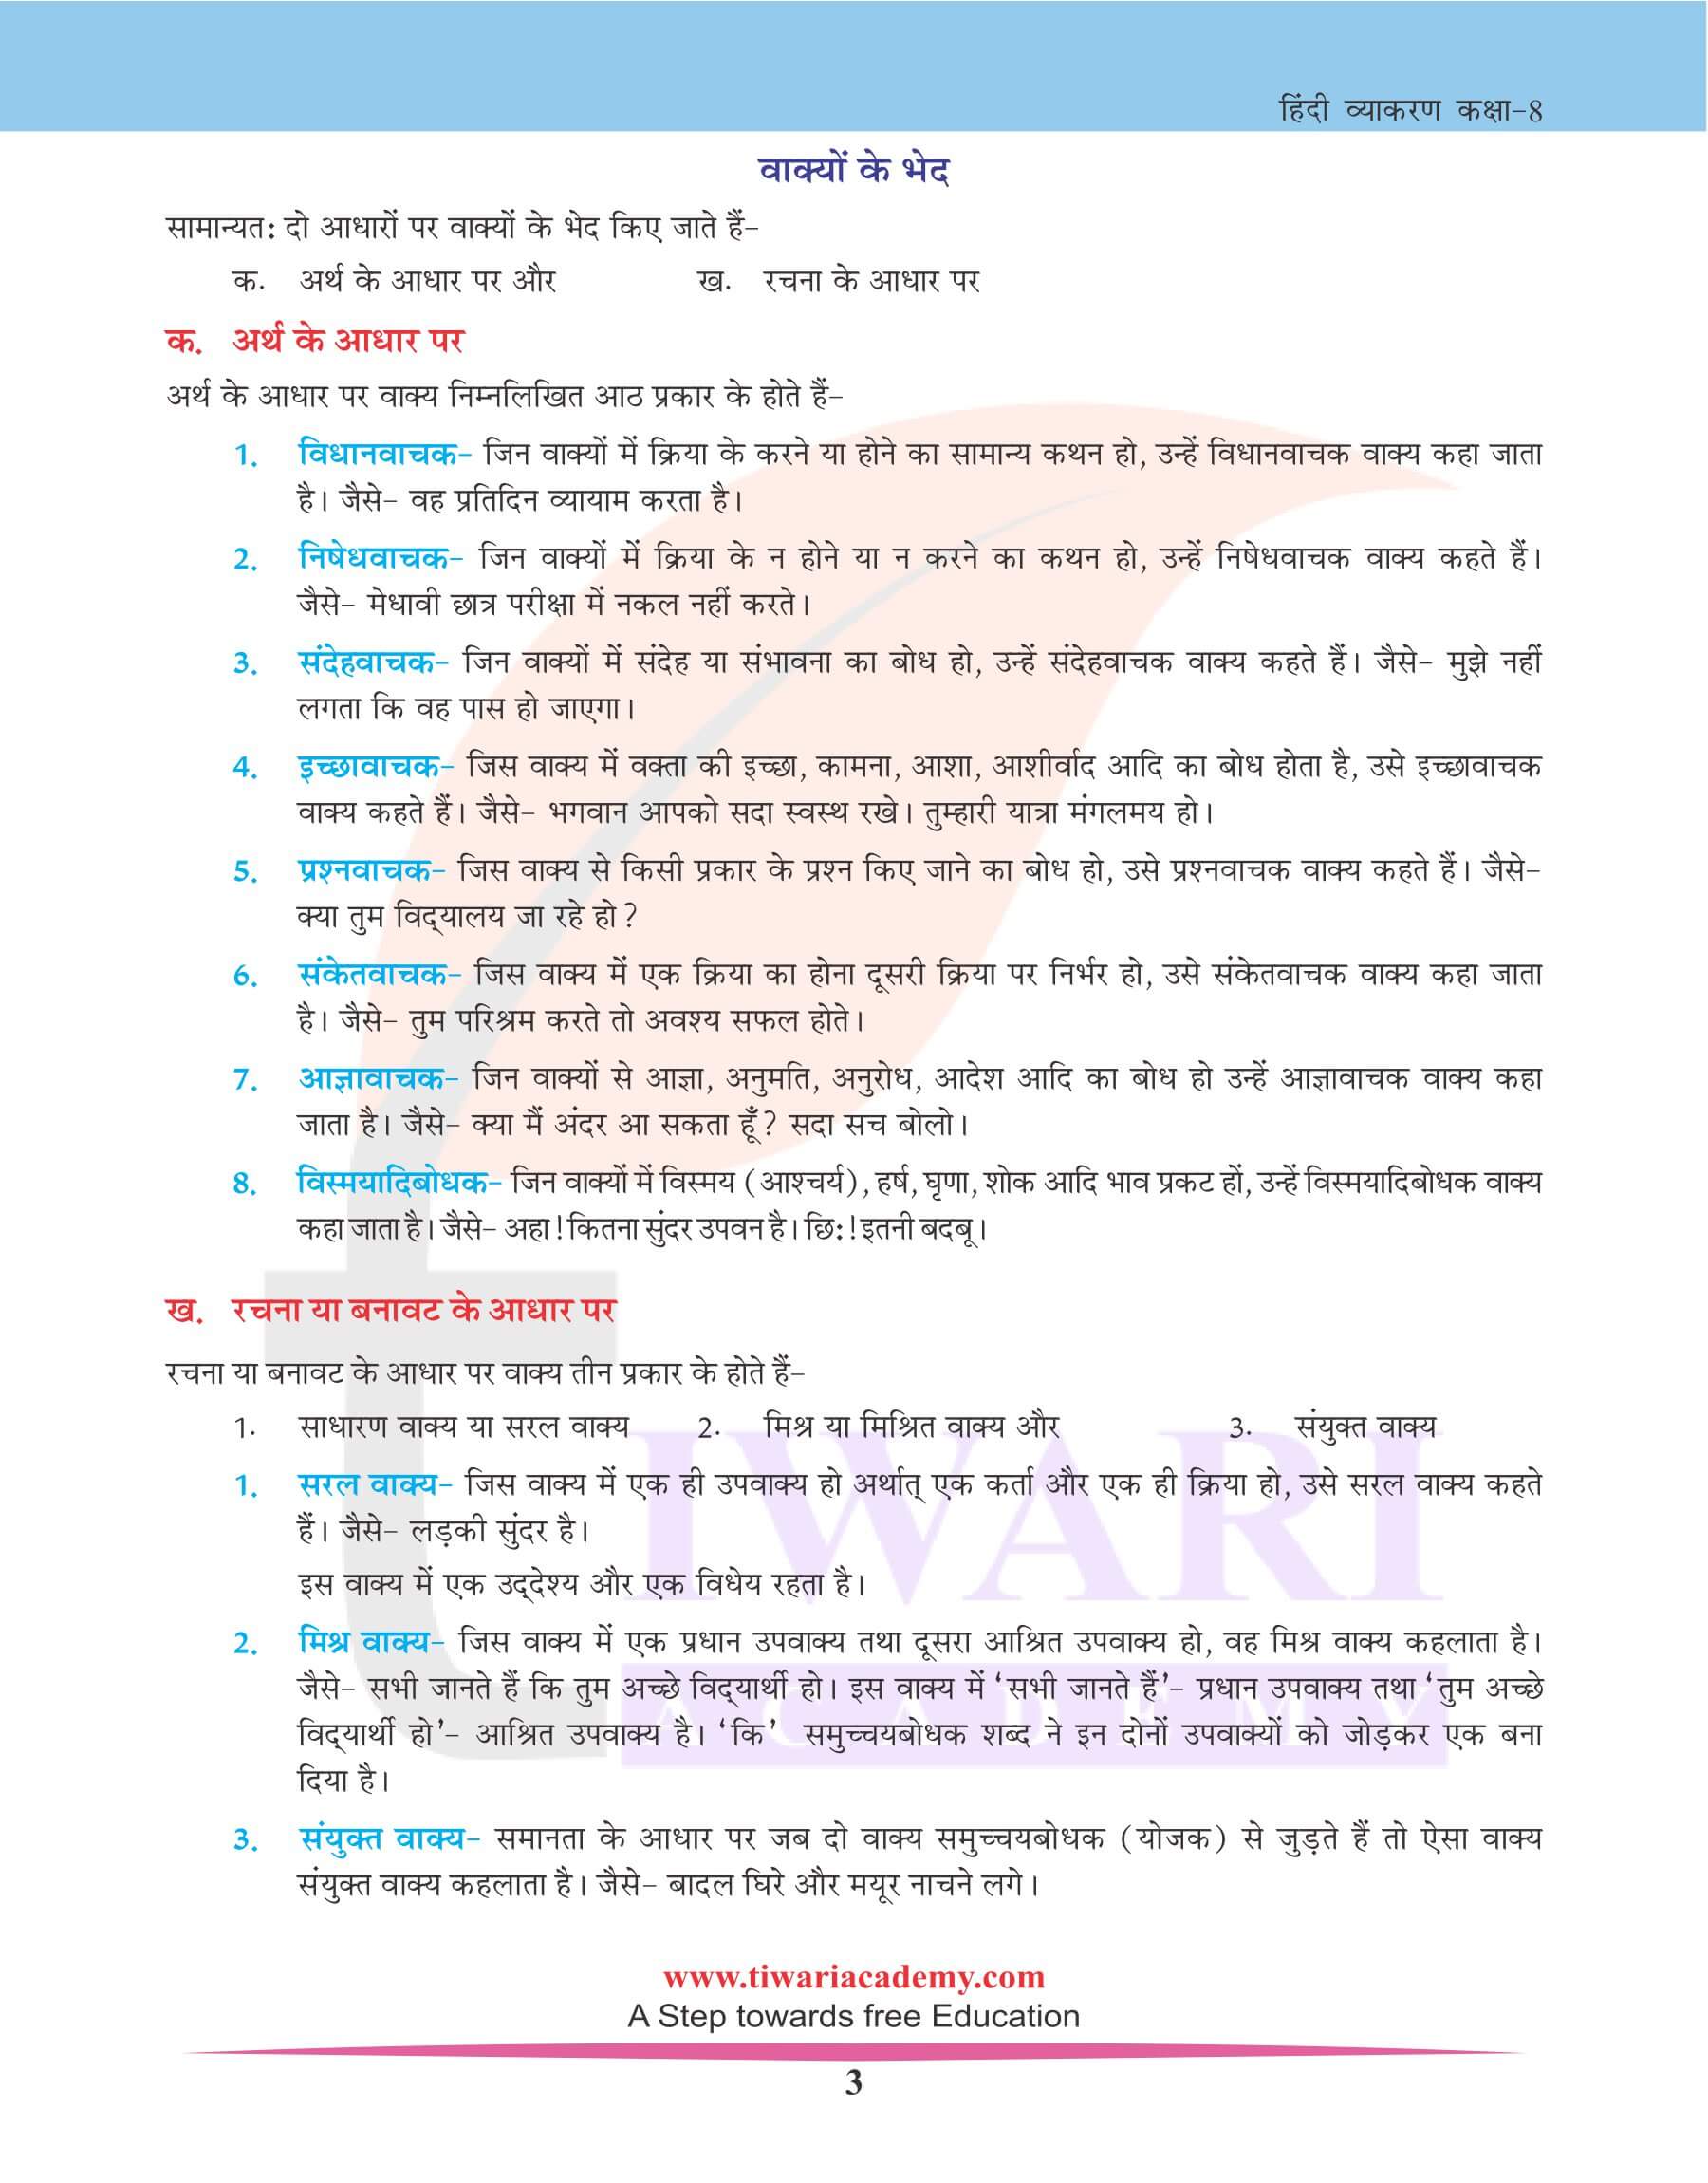 कक्षा 8 हिंदी व्याकरण में वाक्य विचार